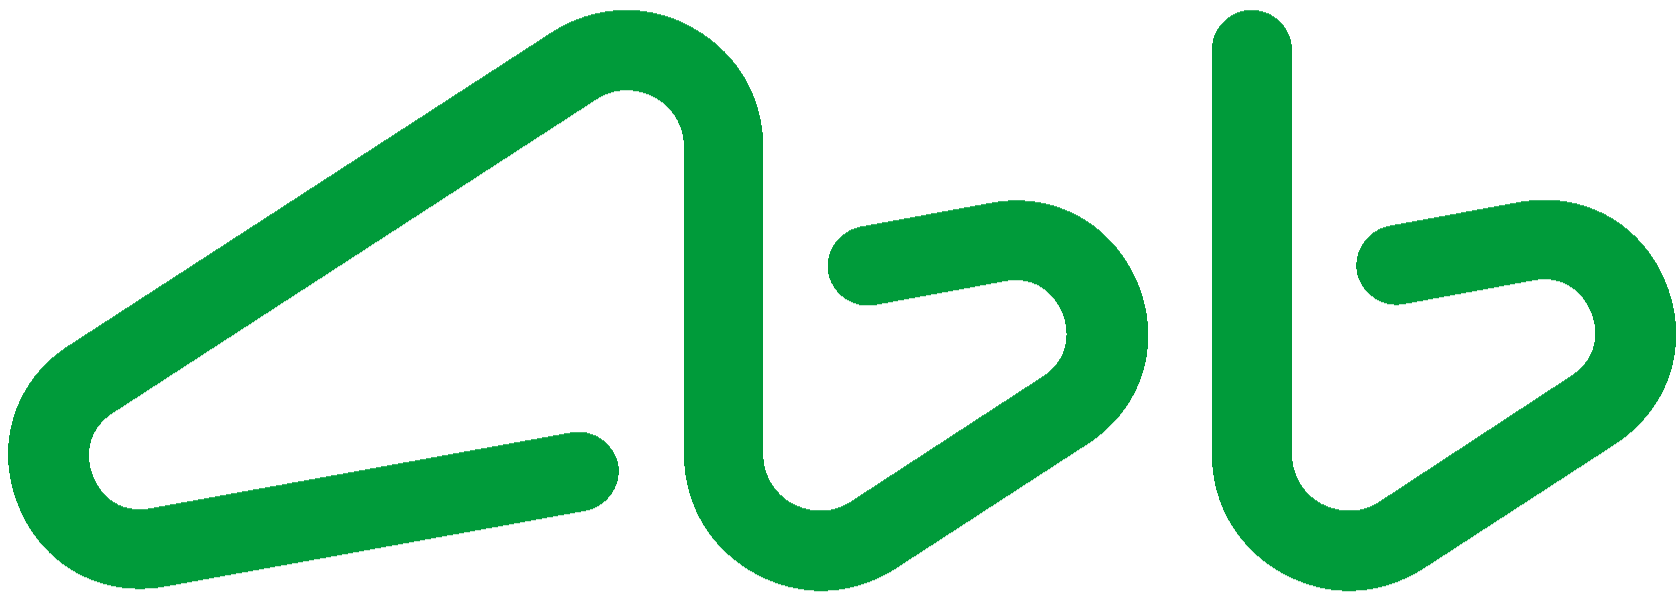 АК Барс банк лого. АКБАРС банк логотип новый. Барс банк логотип. АК Барс банк logo PNG.